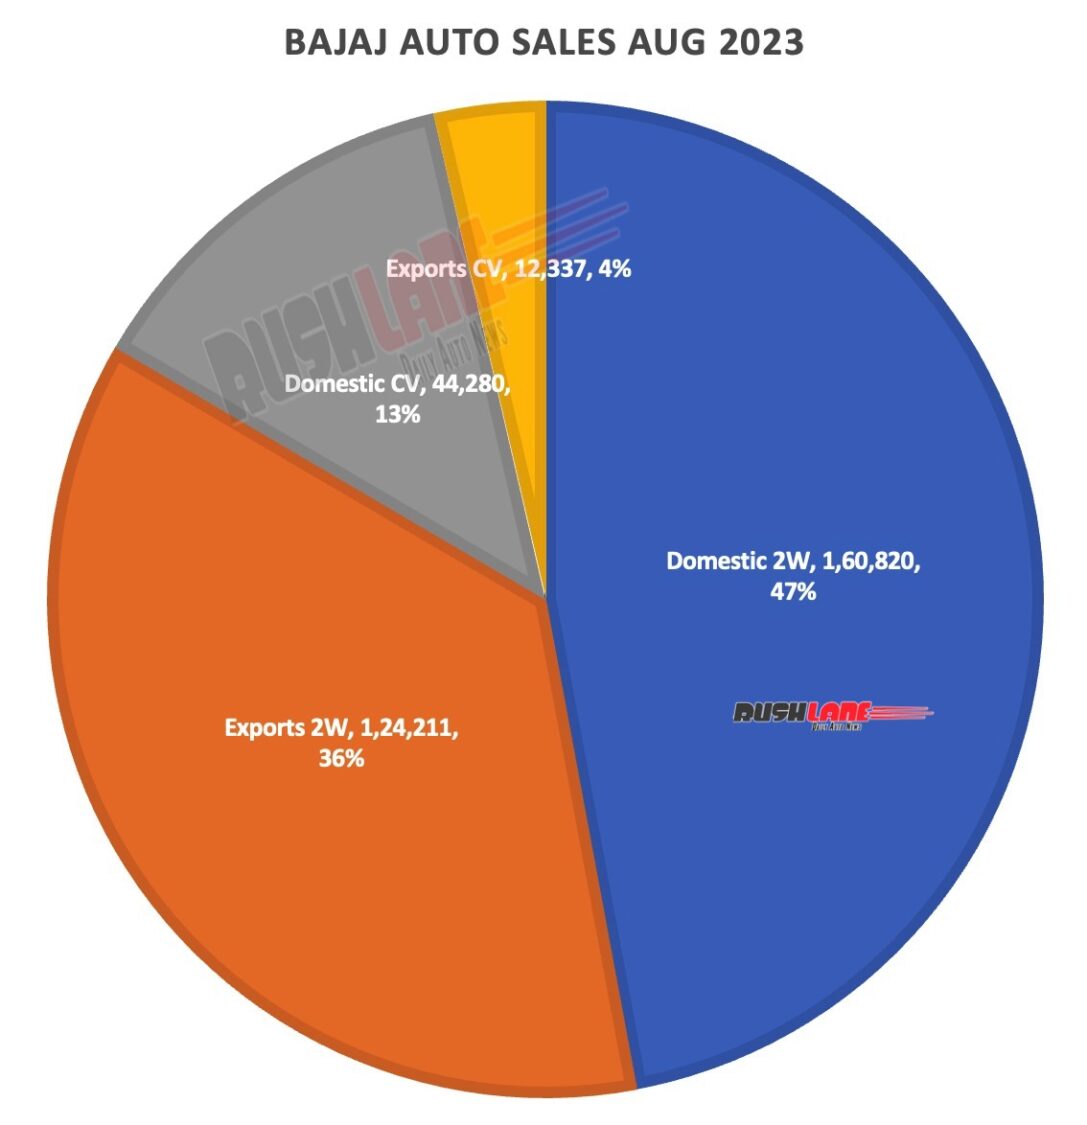 Bajaj Auto Sales Aug 2023 - 2W vs CVs